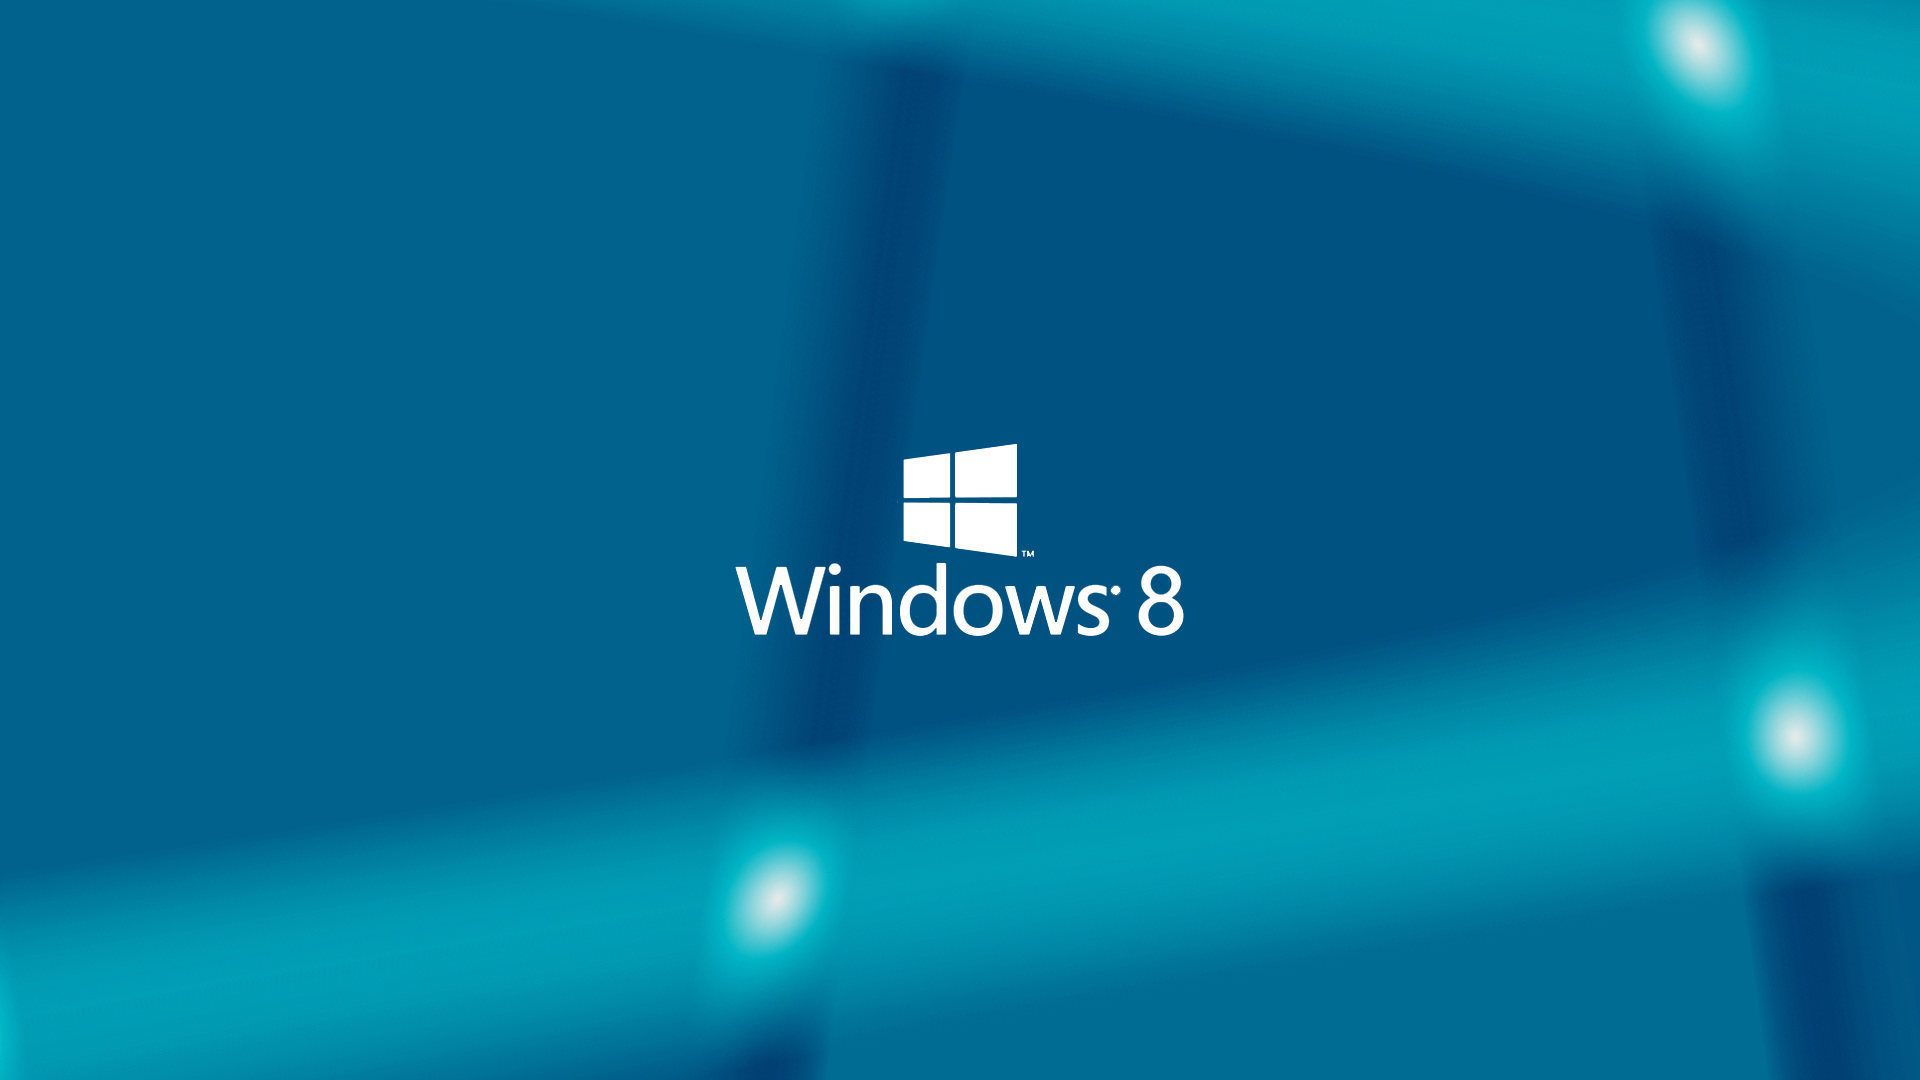 Tải hình nền Windows 8 - Bạn đang tìm kiếm những bức ảnh nền tuyệt đẹp cho màn hình Desktop của mình? Không cần tìm kiếm đâu xa, bởi vì bộ sưu tập hình nền của Windows 8 chính là lựa chọn hàng đầu. Tải ngay hình ảnh liên quan để tìm ra những tác phẩm nghệ thuật độc đáo và sáng tạo.